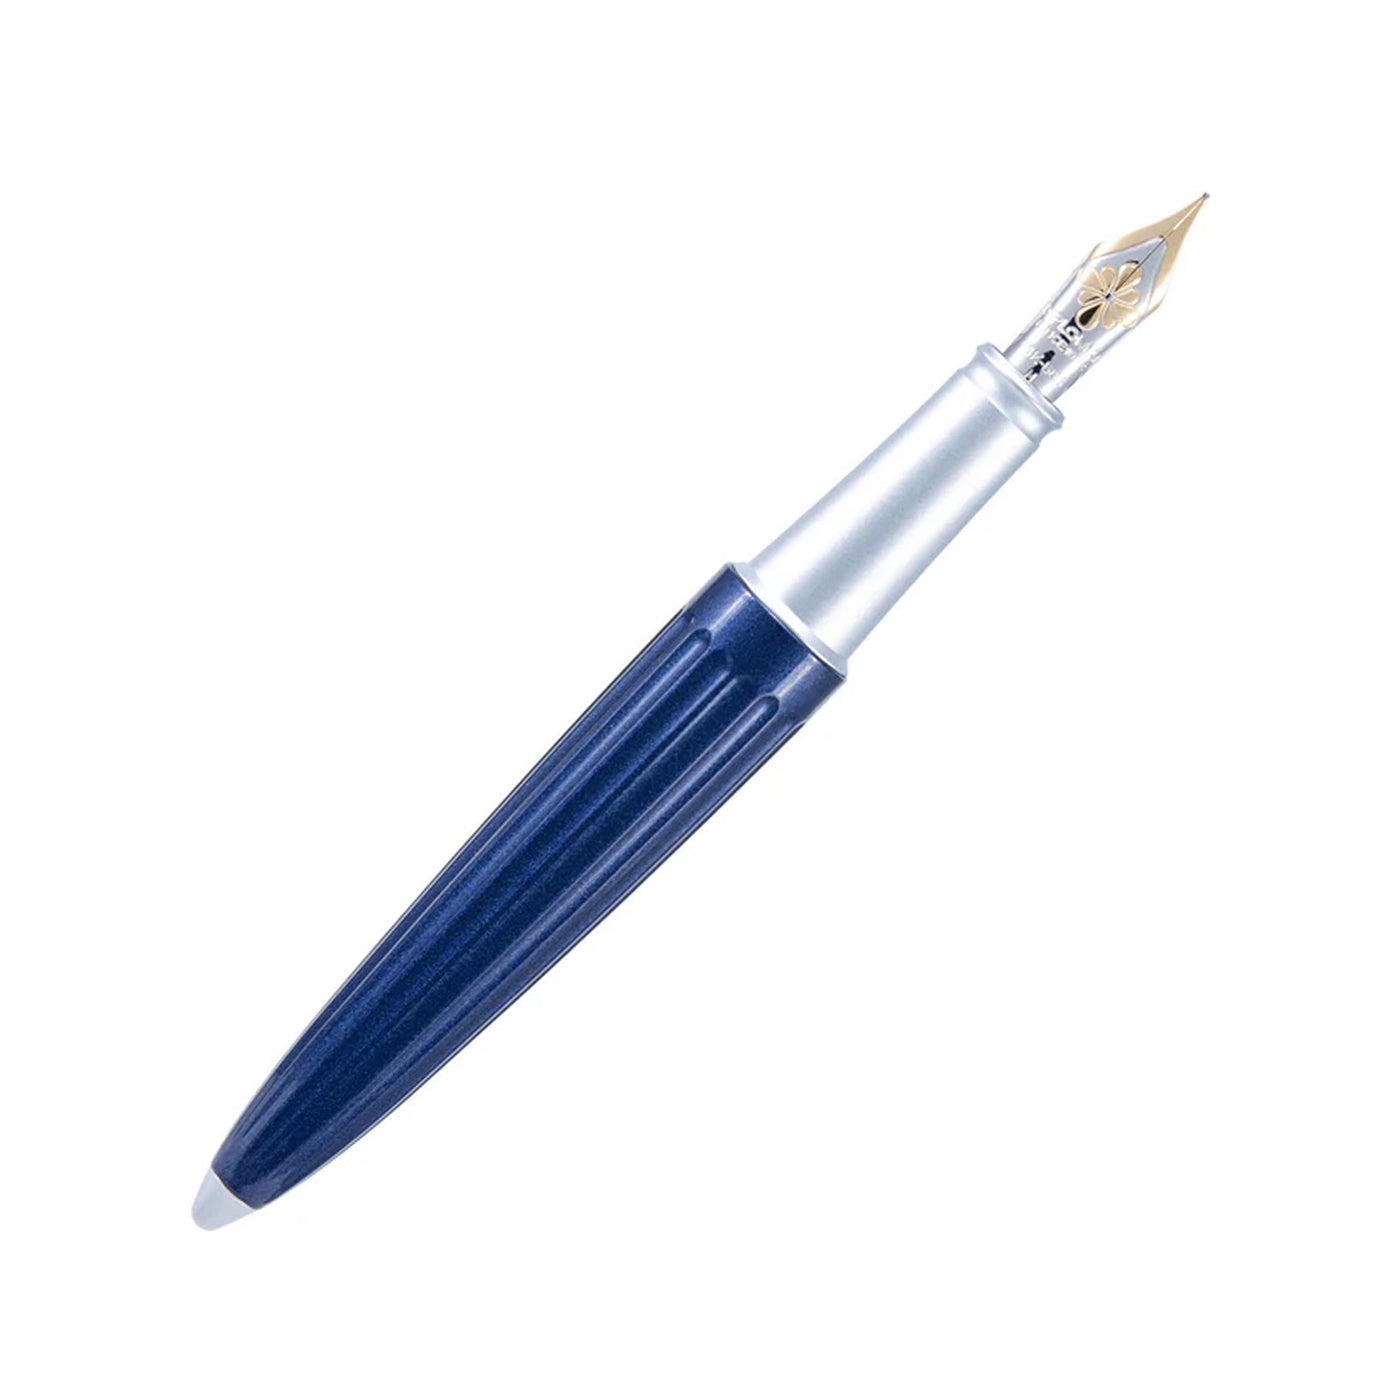  Diplomat Aero 14K Gold Fountain Pen - Midnight Blue 3